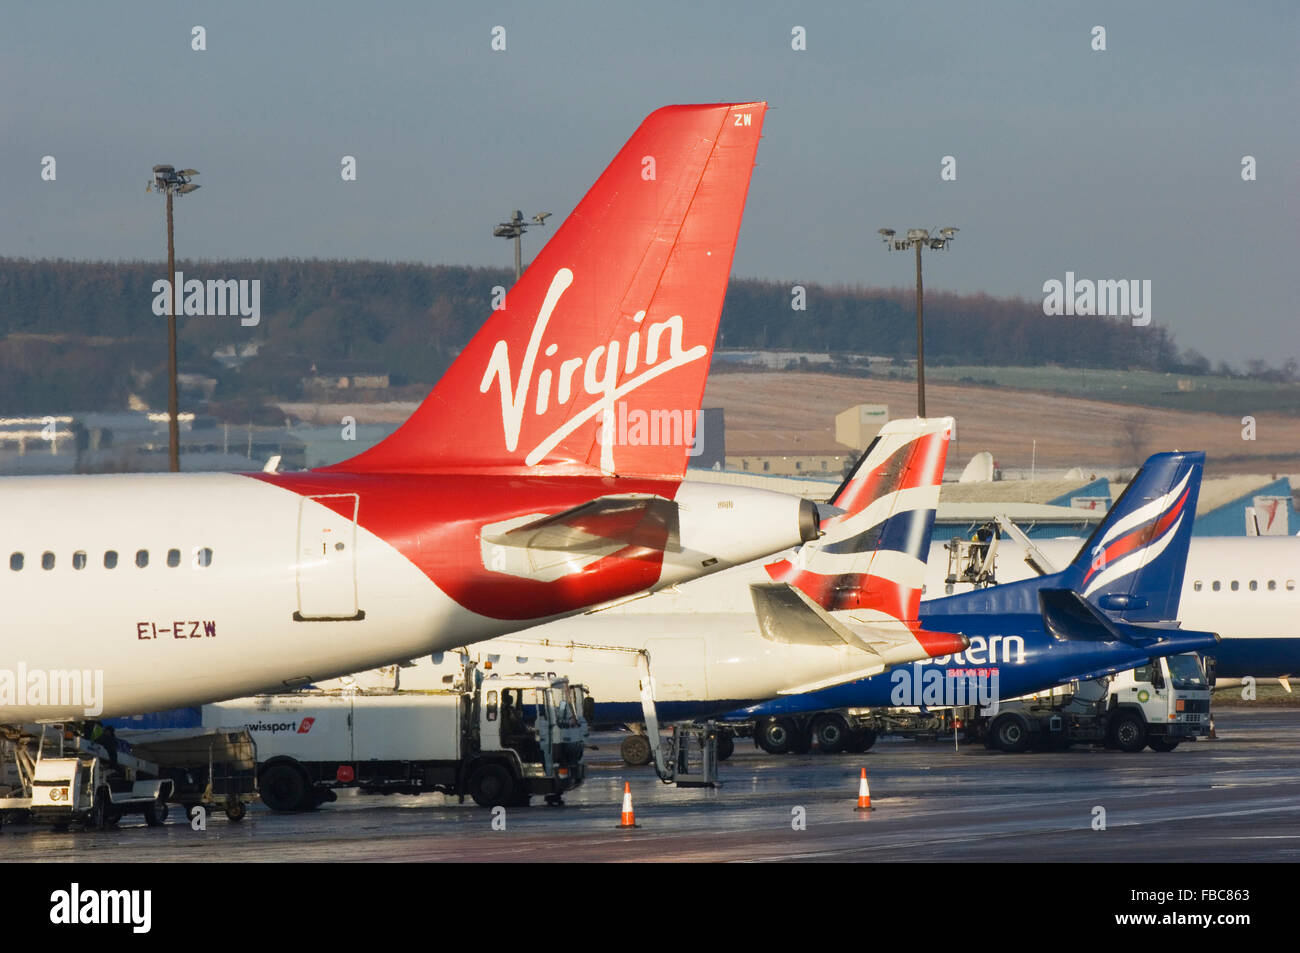 Flugzeug-Schwänzen zeigen die Markierungen der verschiedenen Airlines - Flughafen Aberdeen, Schottland. Stockfoto